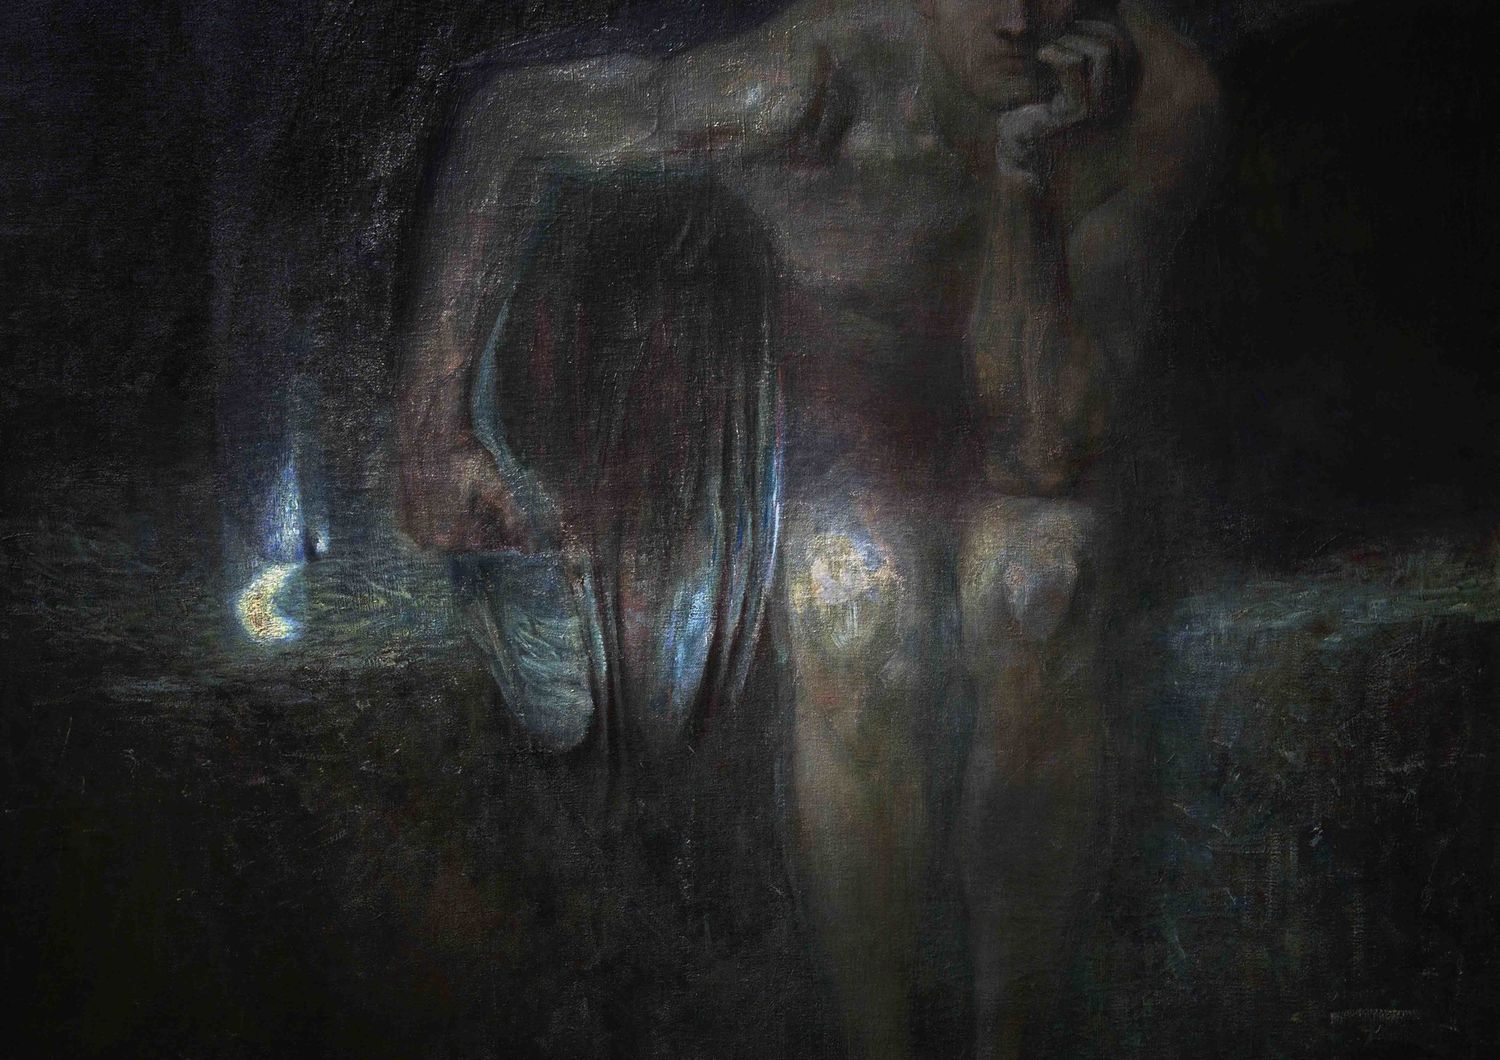 Franz von Stuck, Lucifero, 1890 c. National Gallery